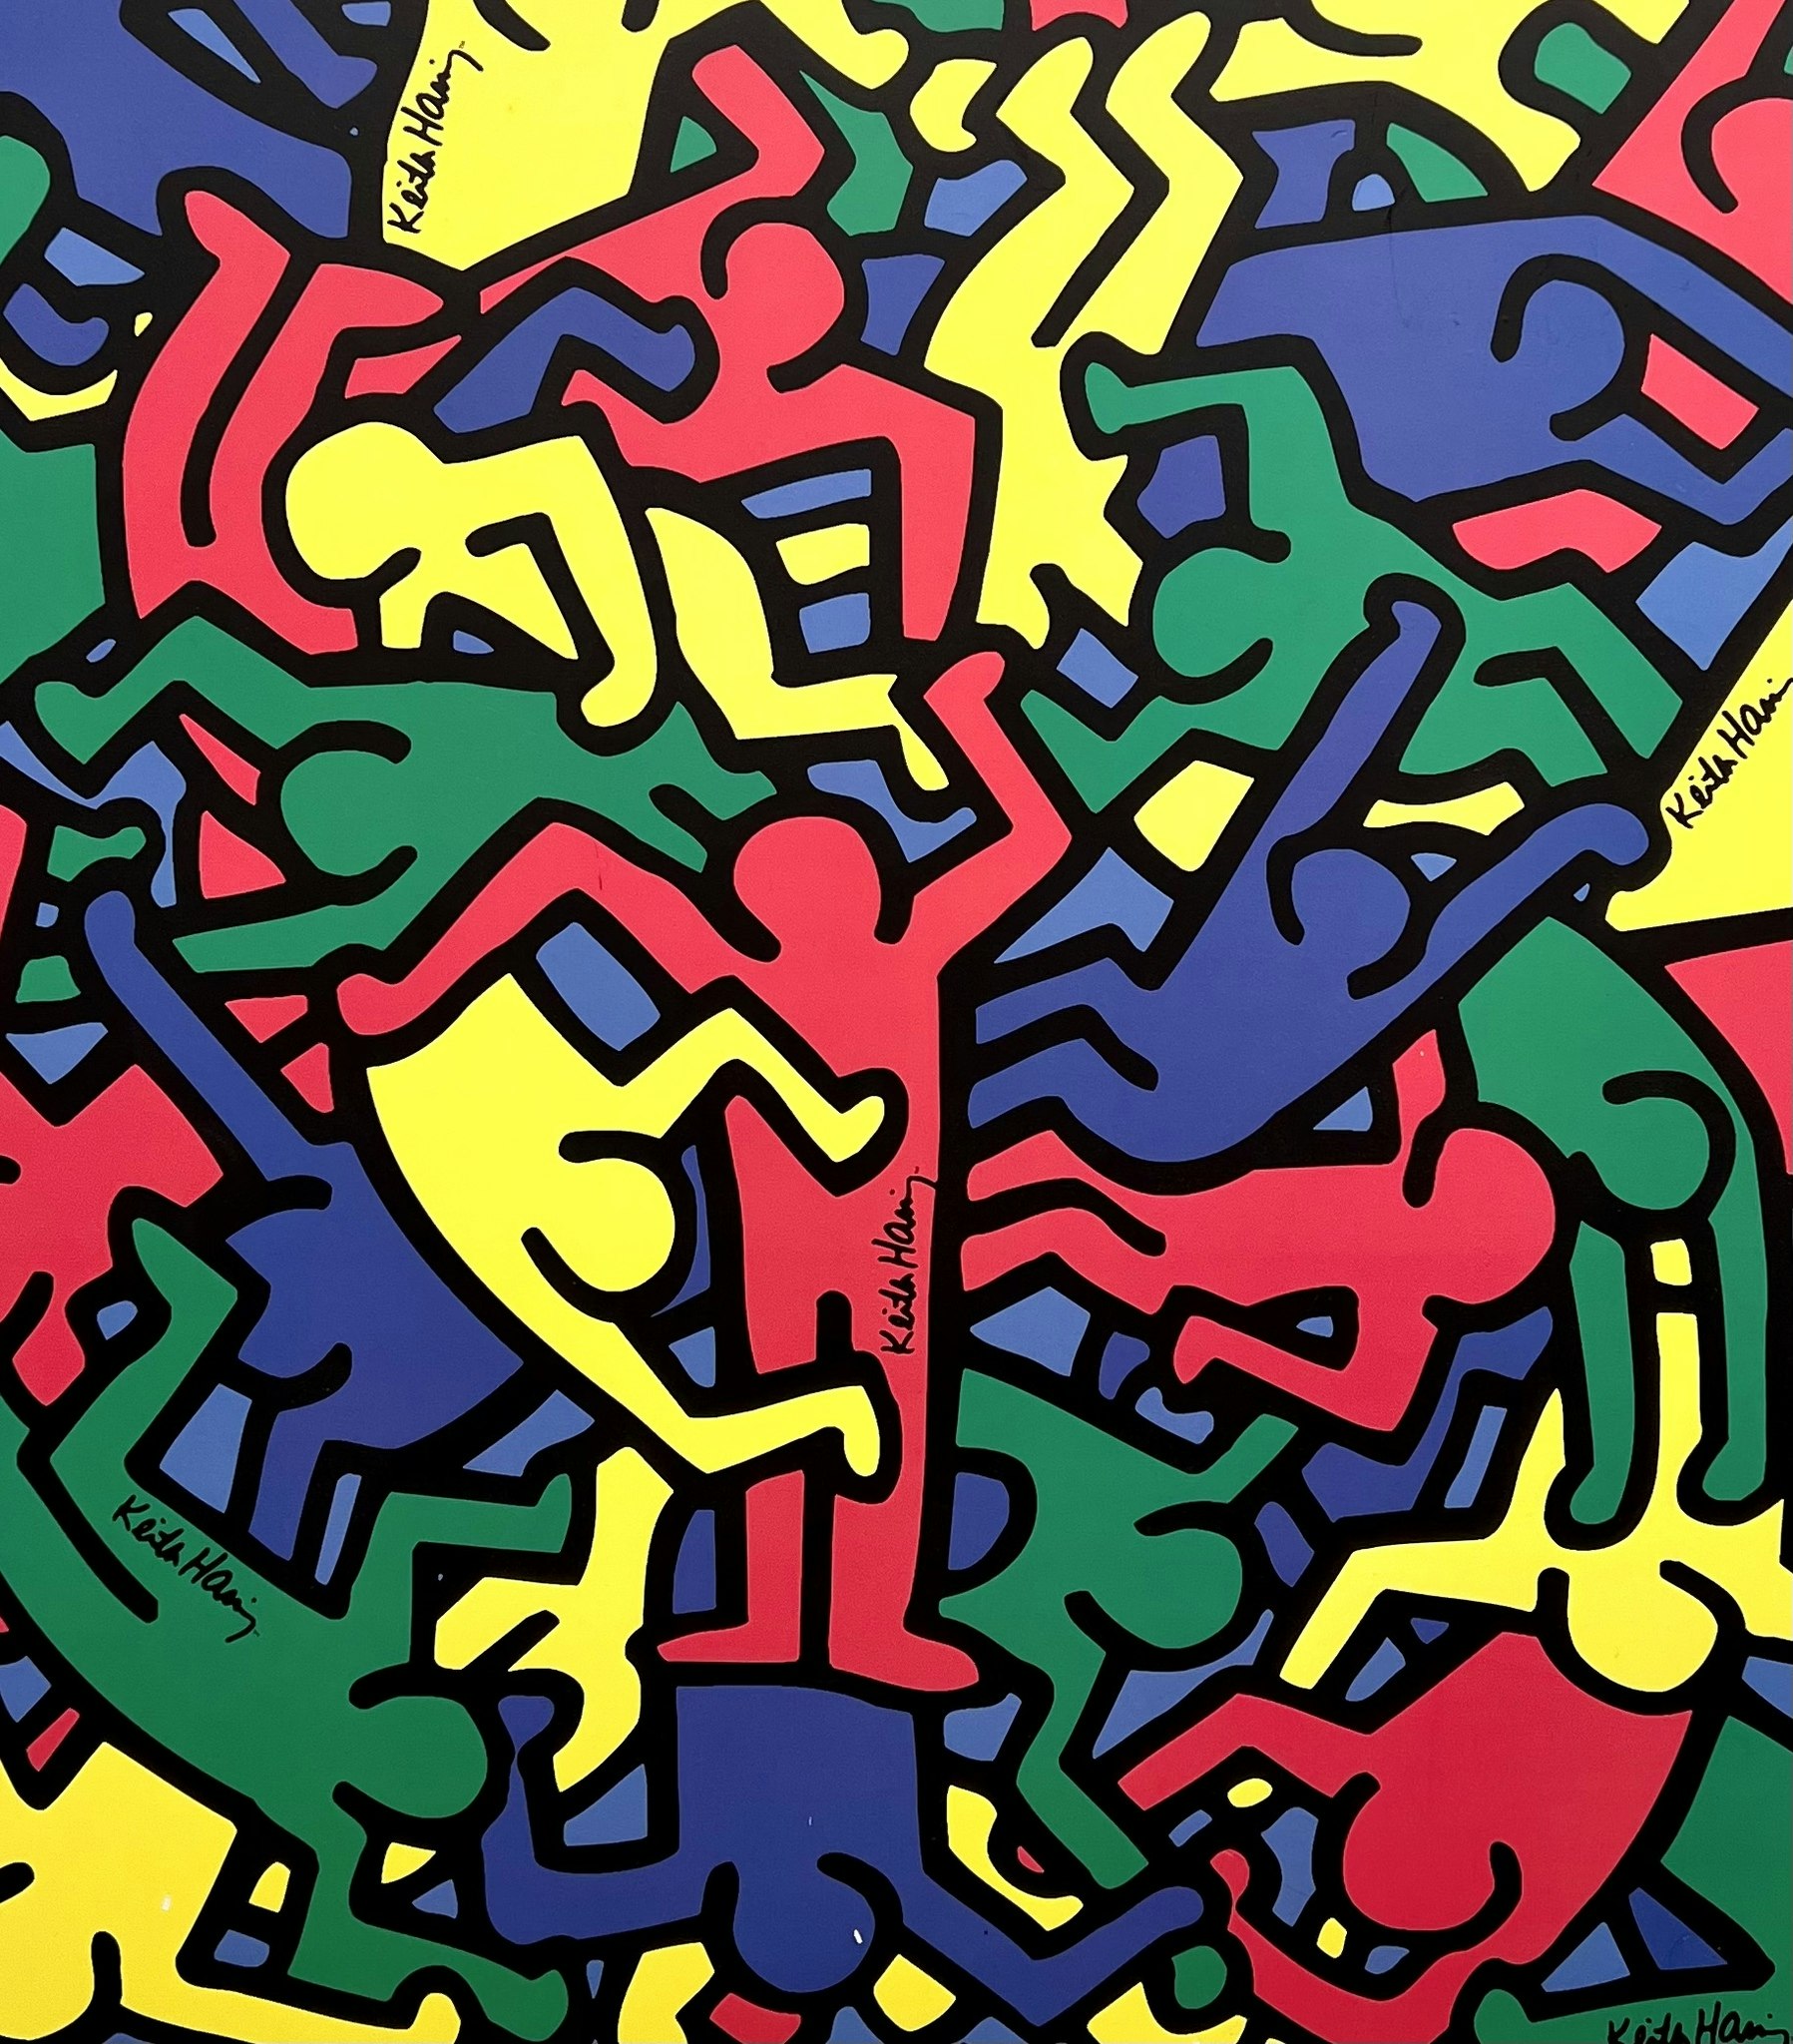 "Untitled" Affisch av Keith Haring på pannå. 78x78 cm